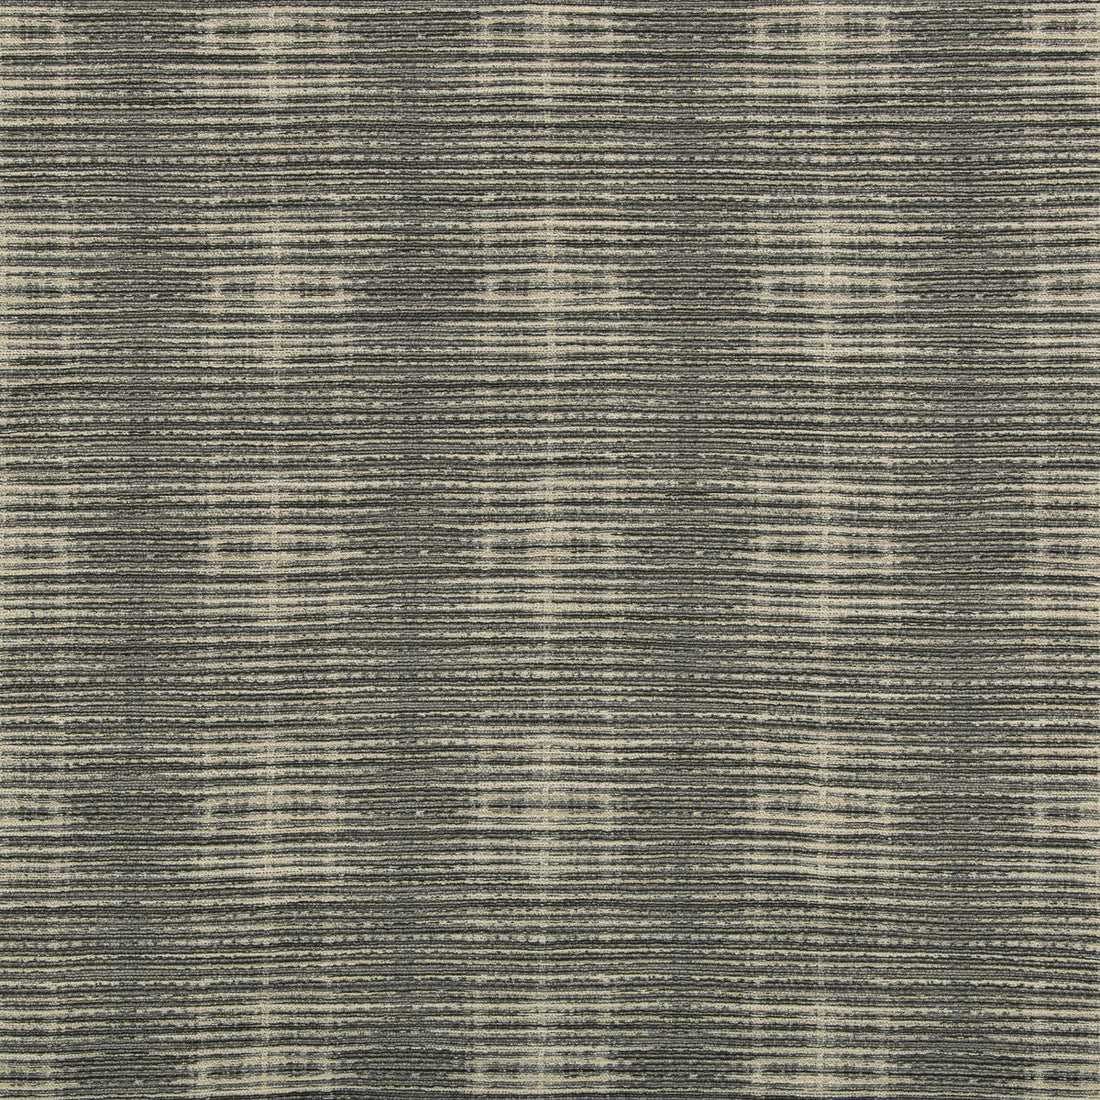 Kravet Design fabric in 35716-81 color - pattern 35716.81.0 - by Kravet Design